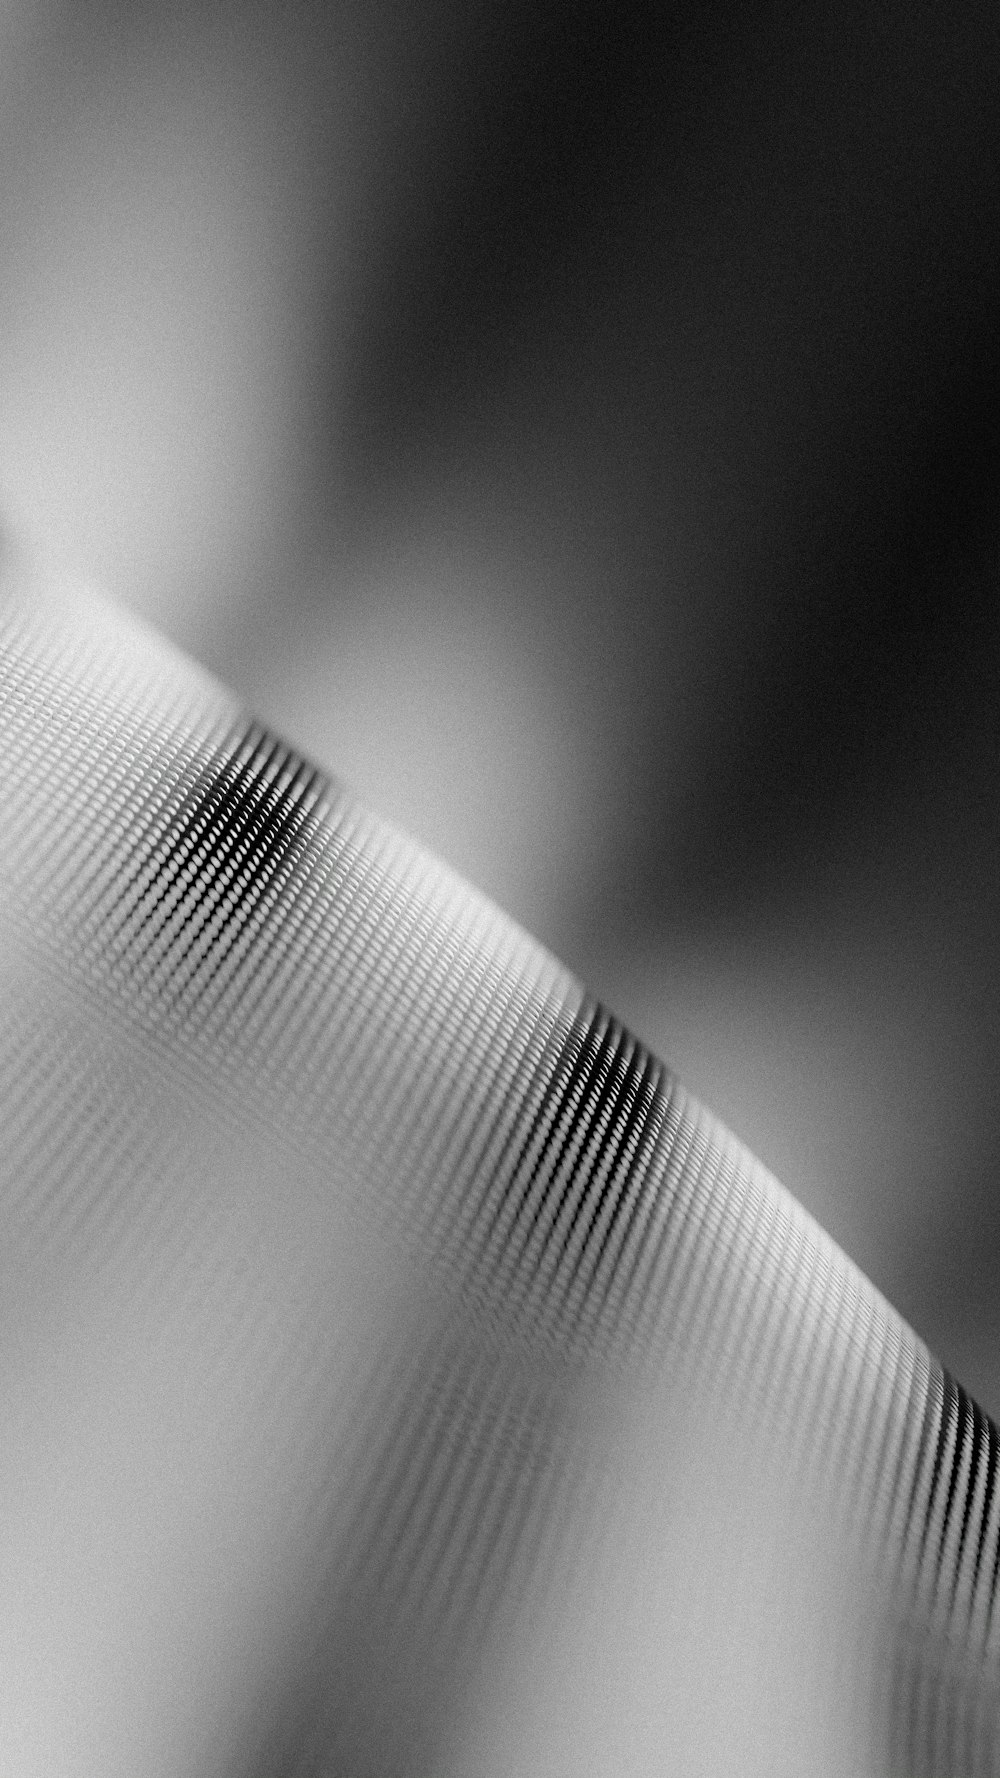 uma foto em preto e branco de um objeto curvo